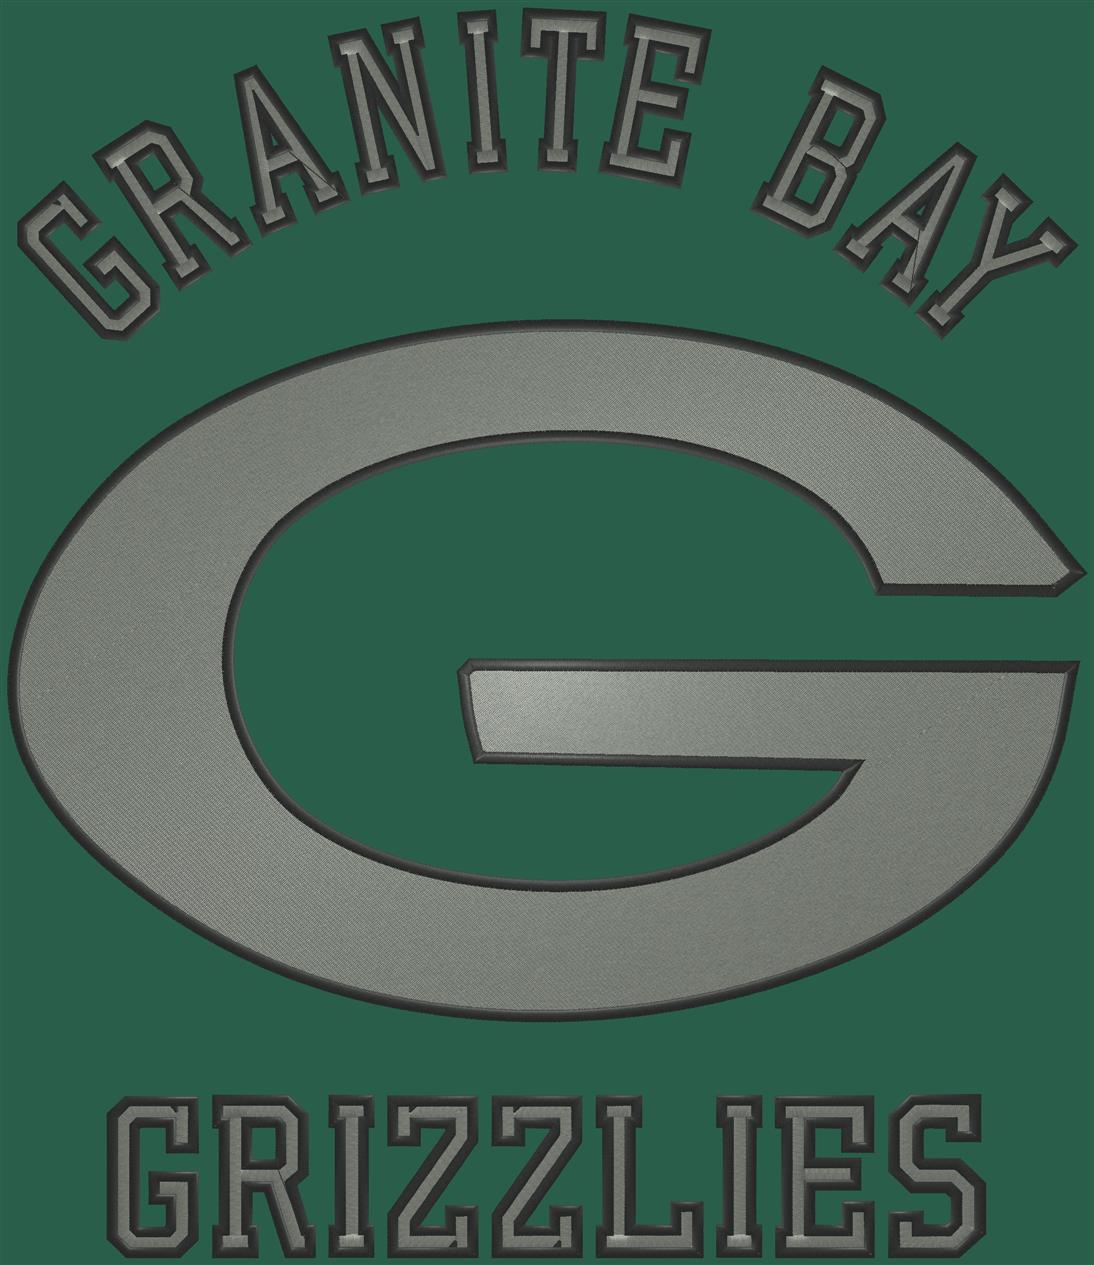 GRANITE BAY 78